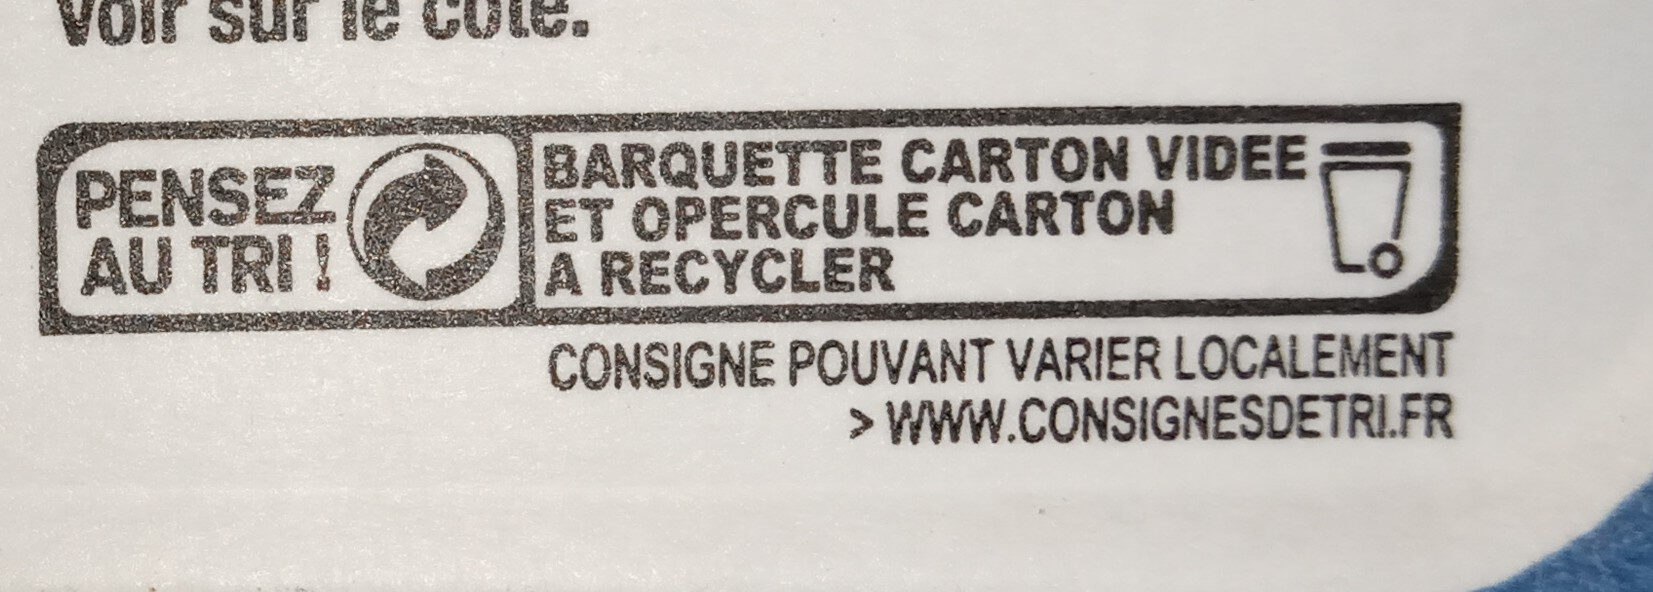 Brandade de morue parmentière - Instruction de recyclage et/ou informations d'emballage